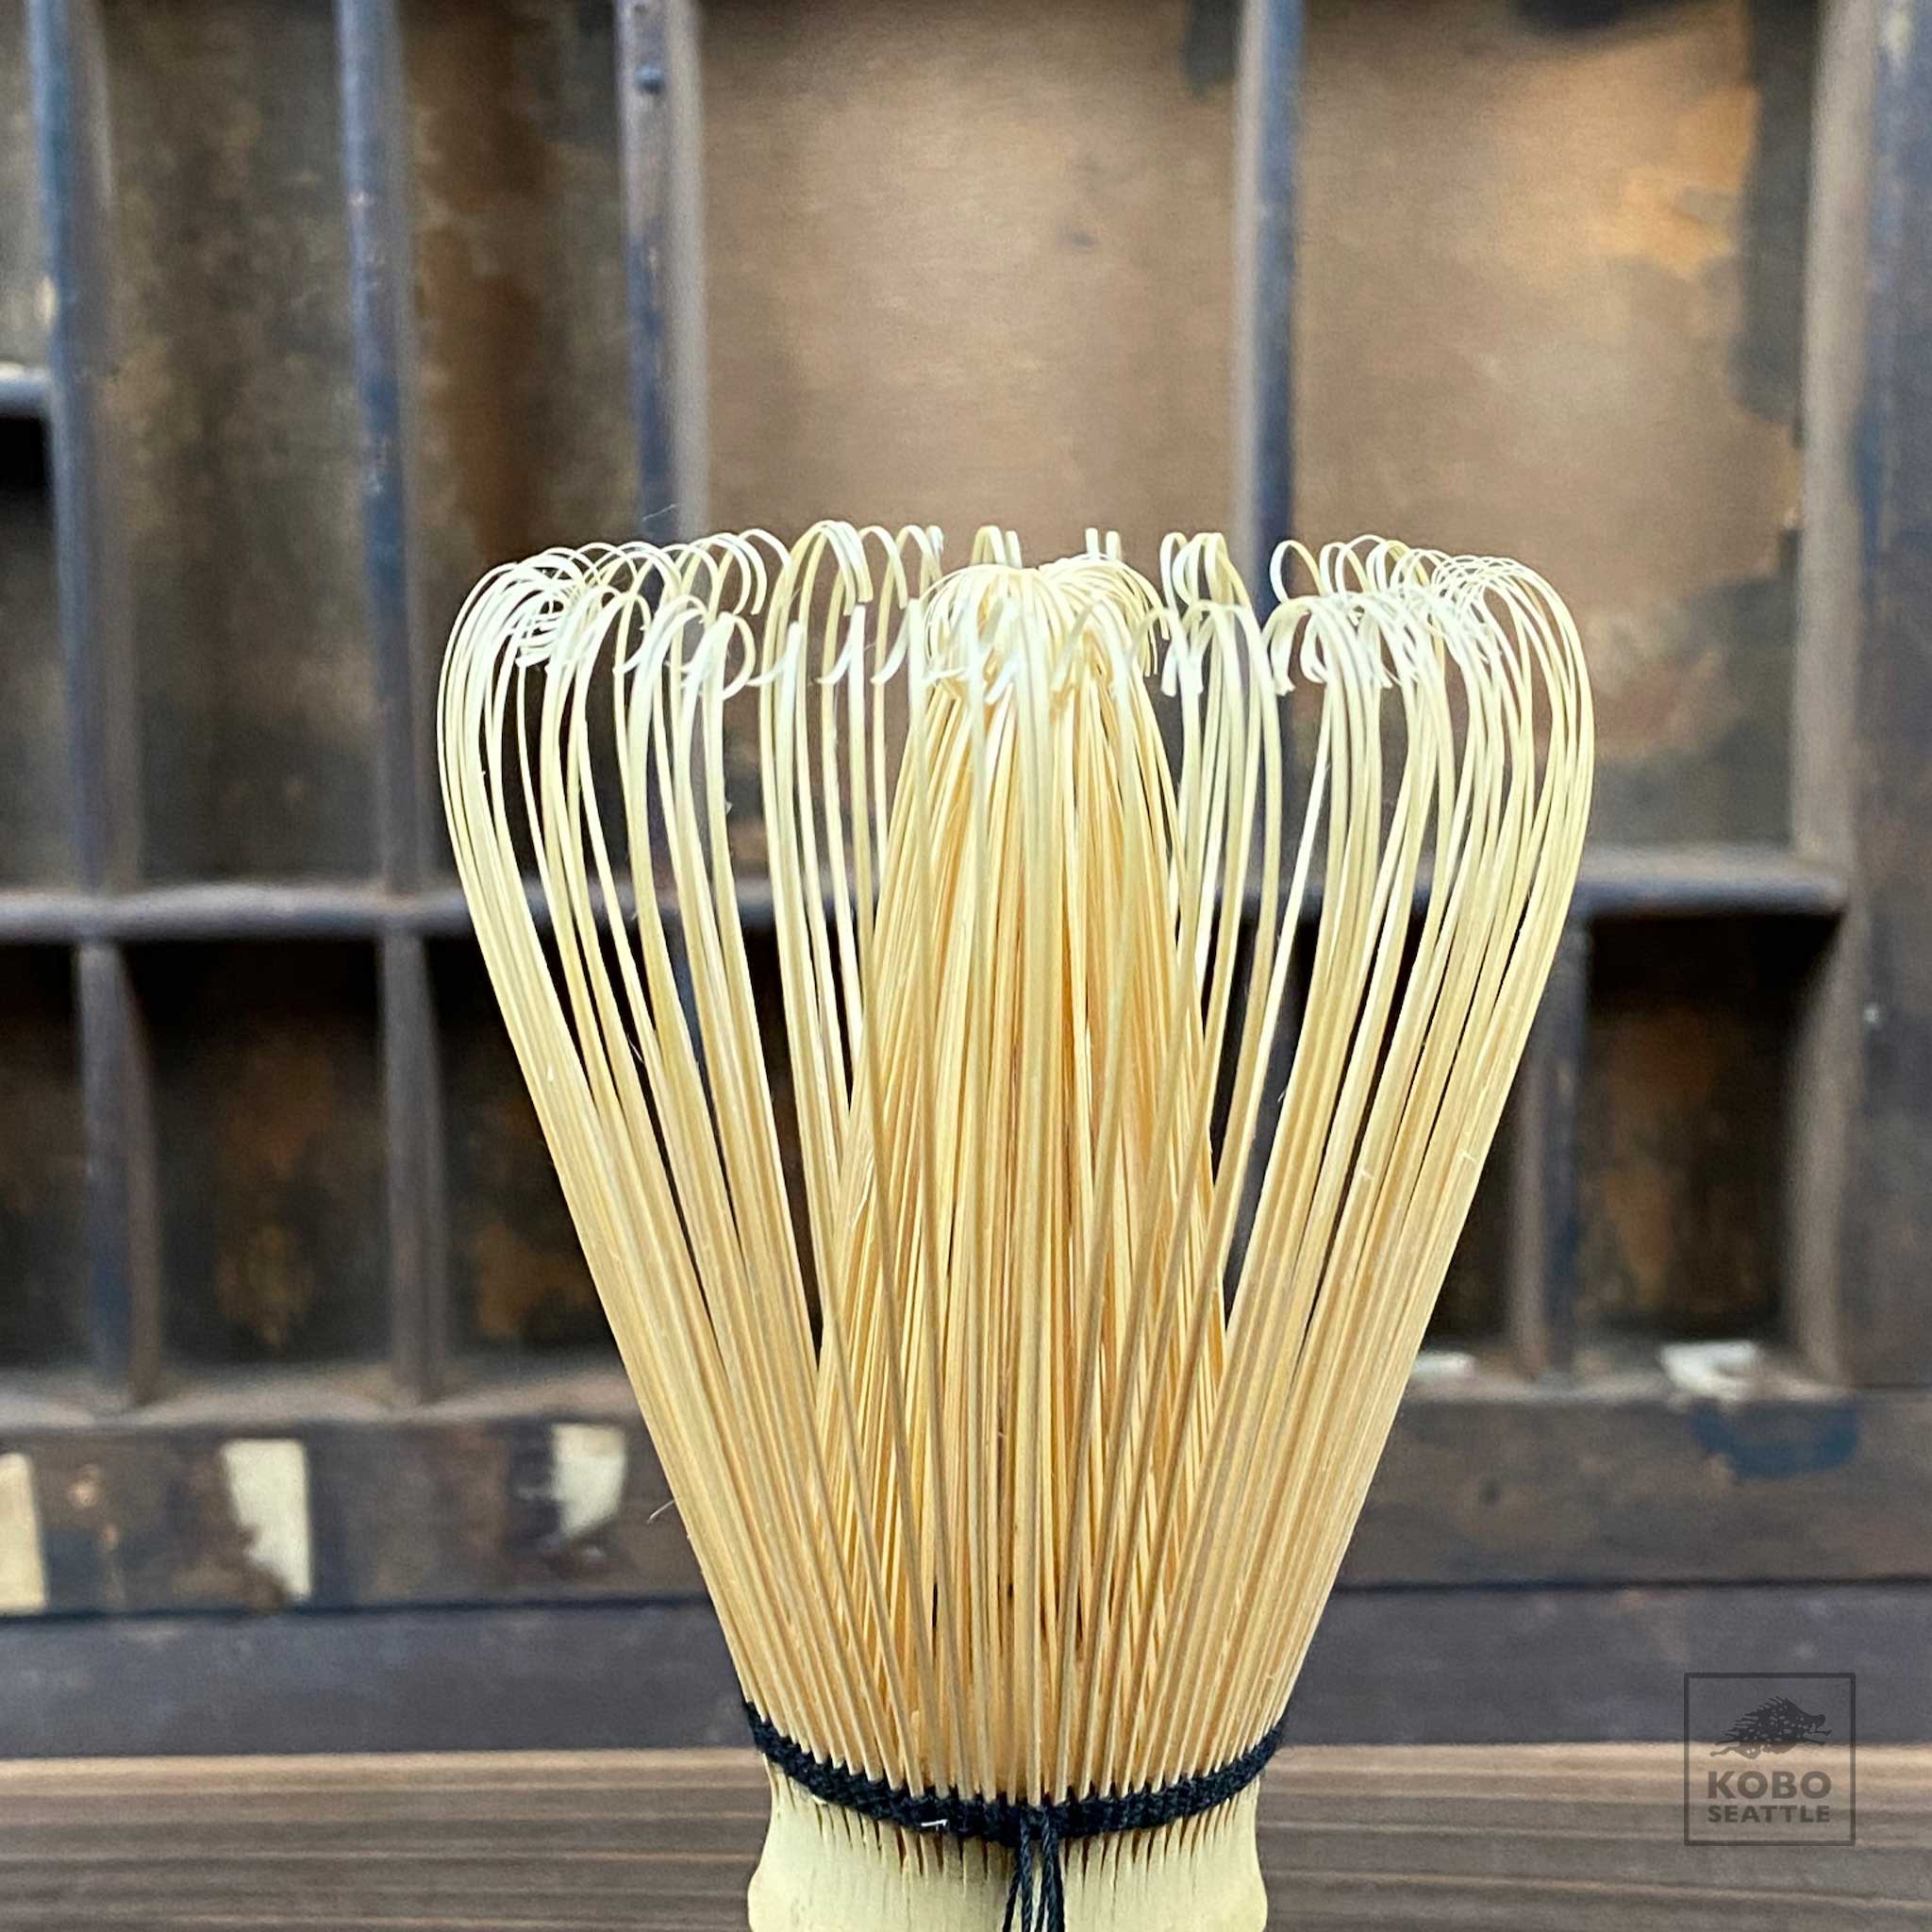 Natural Bamboo Matcha Tea Whisk - Long